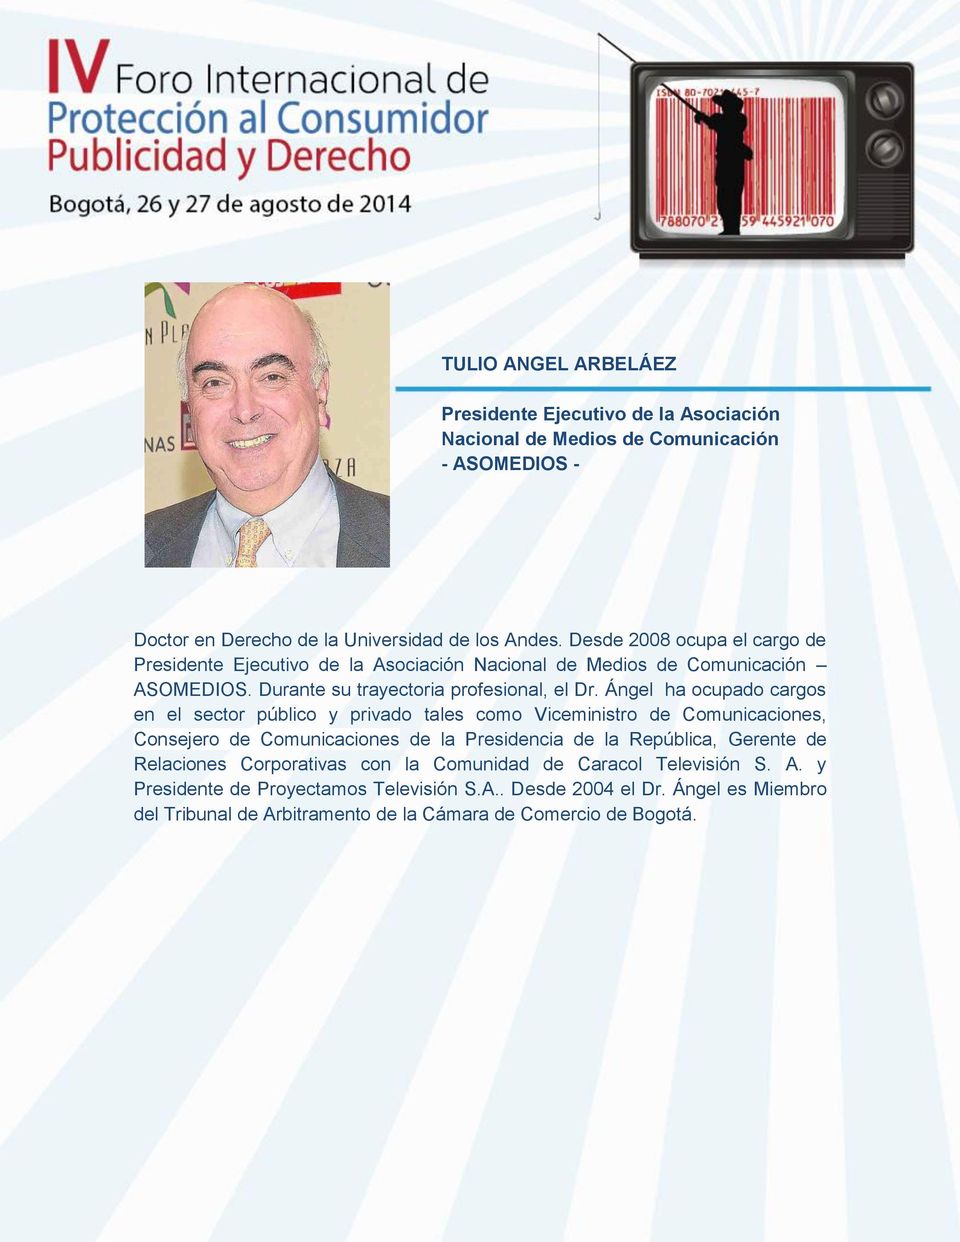 Ángel ha ocupado cargos en el sector público y privado tales como Viceministro de Comunicaciones, Consejero de Comunicaciones de la Presidencia de la República, Gerente de